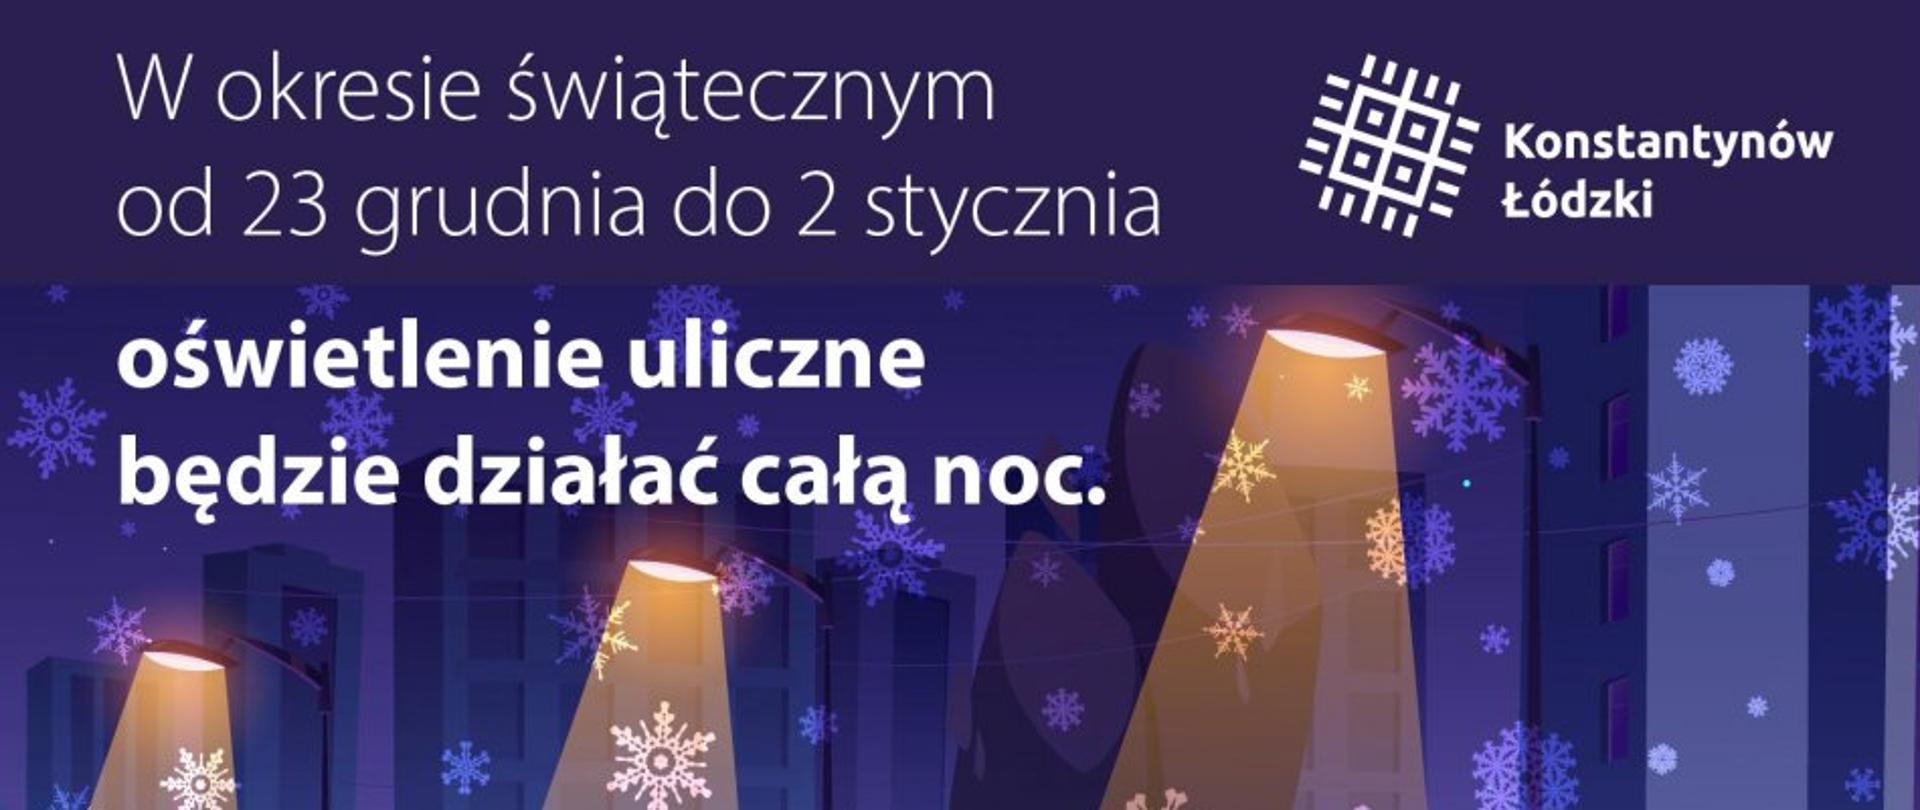 Grafika, na której widać świecące lampy oraz padający śnieg. Na górze po lewej stronie widnieje napis: "W okresie świątecznym
od 23 grudnia do 2 stycznia
oświetlenie uliczne
będzie działać całą noc." Po prawej stronie znajduje się logo Konstantynowa Łódzkiego.